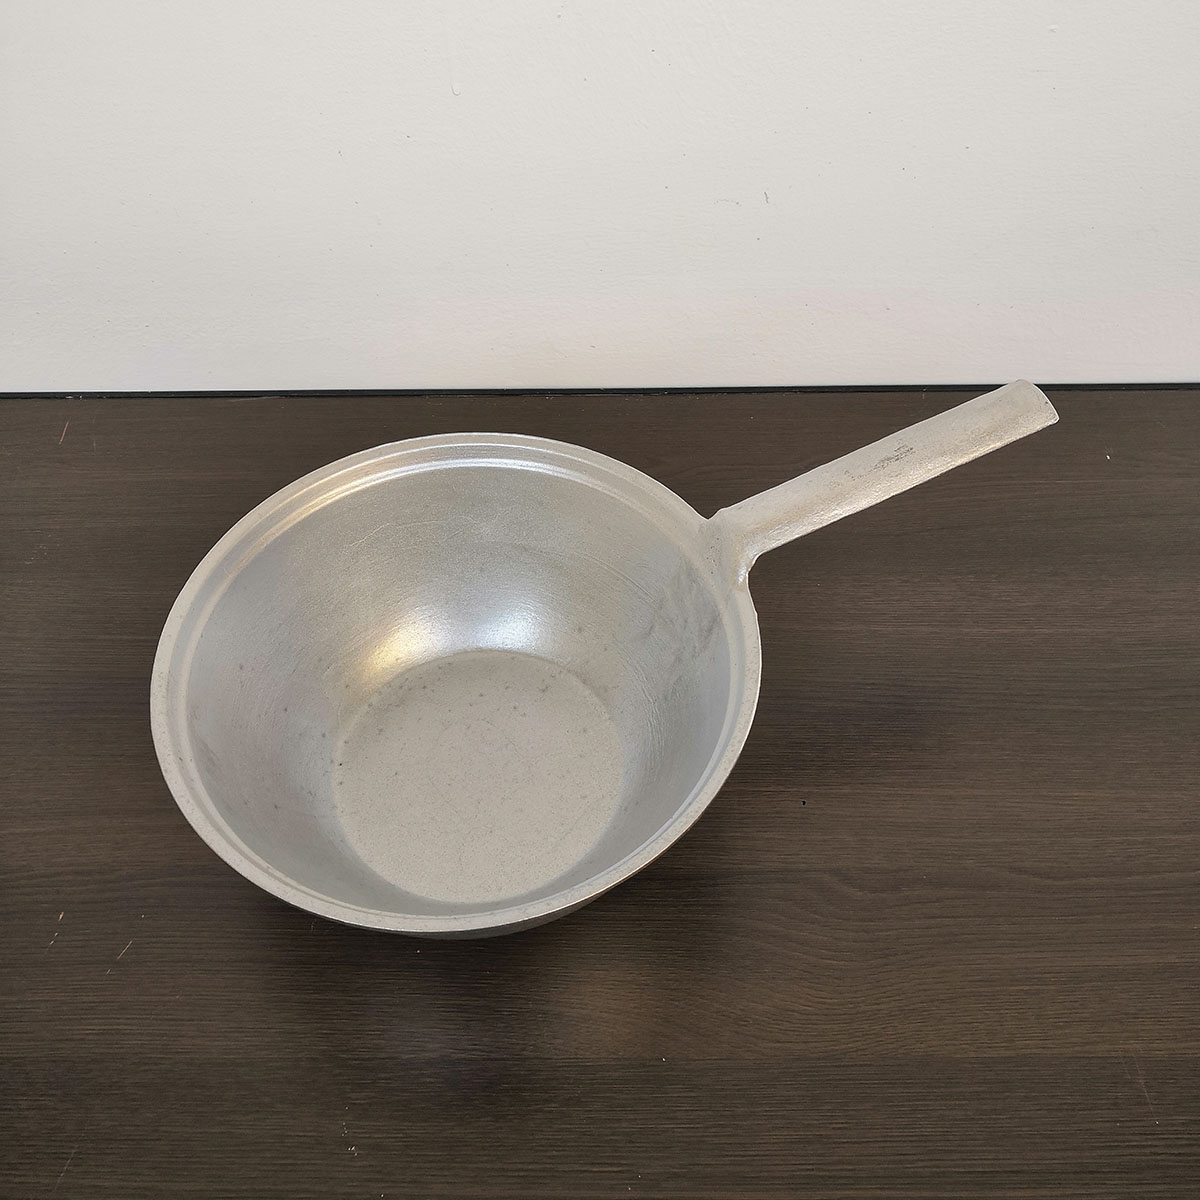 手工铝水瓢可刻字商用煮米线小锅老式加厚单把手纯铝小铝锅水舀子